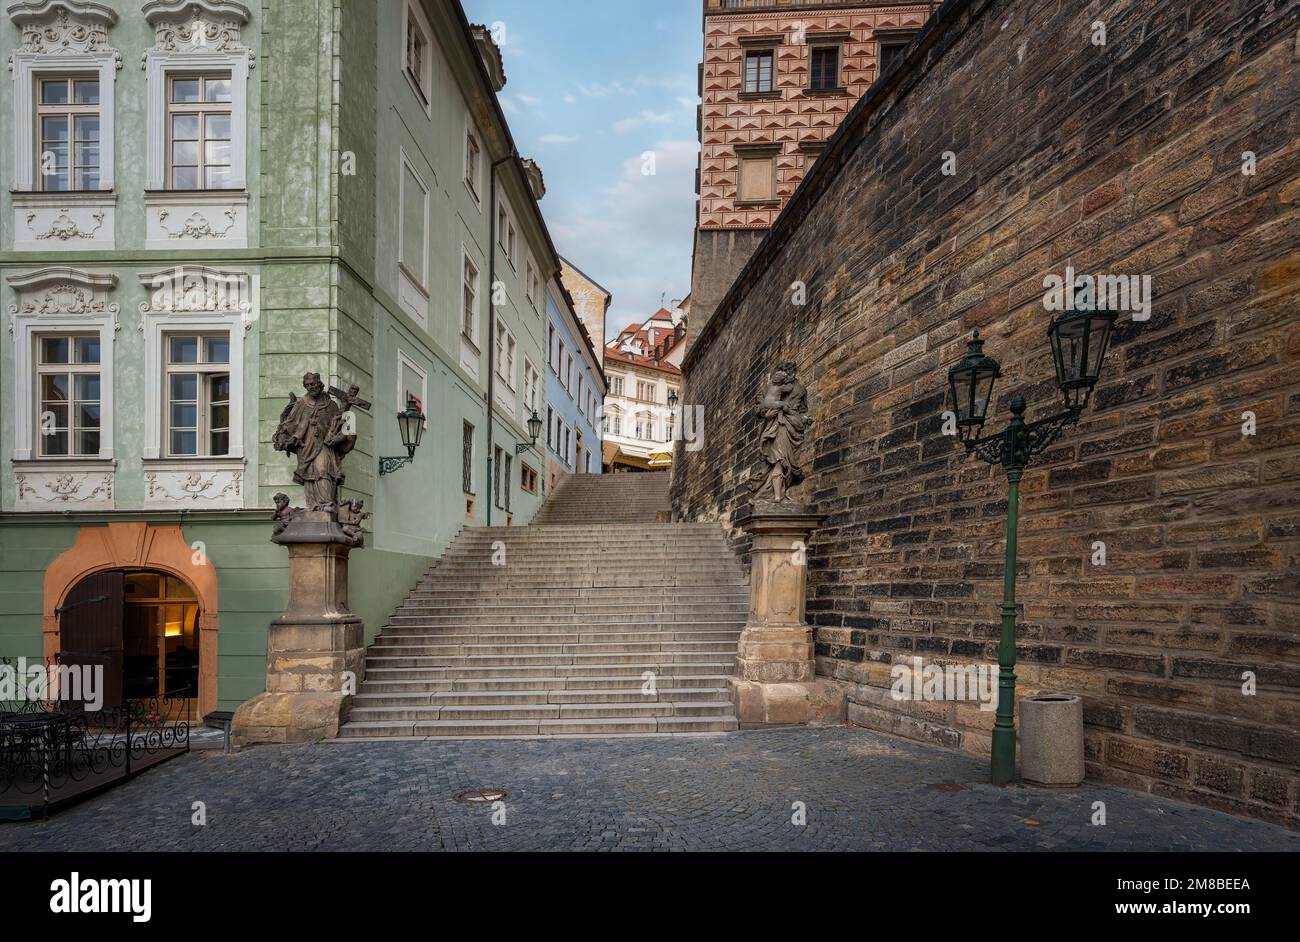 Radnicke Schody Treppe bei Mala Strana mit Statuen von St. Joseph und St. John von Nepomuk - Prag, Tschechische Republik Stockfoto